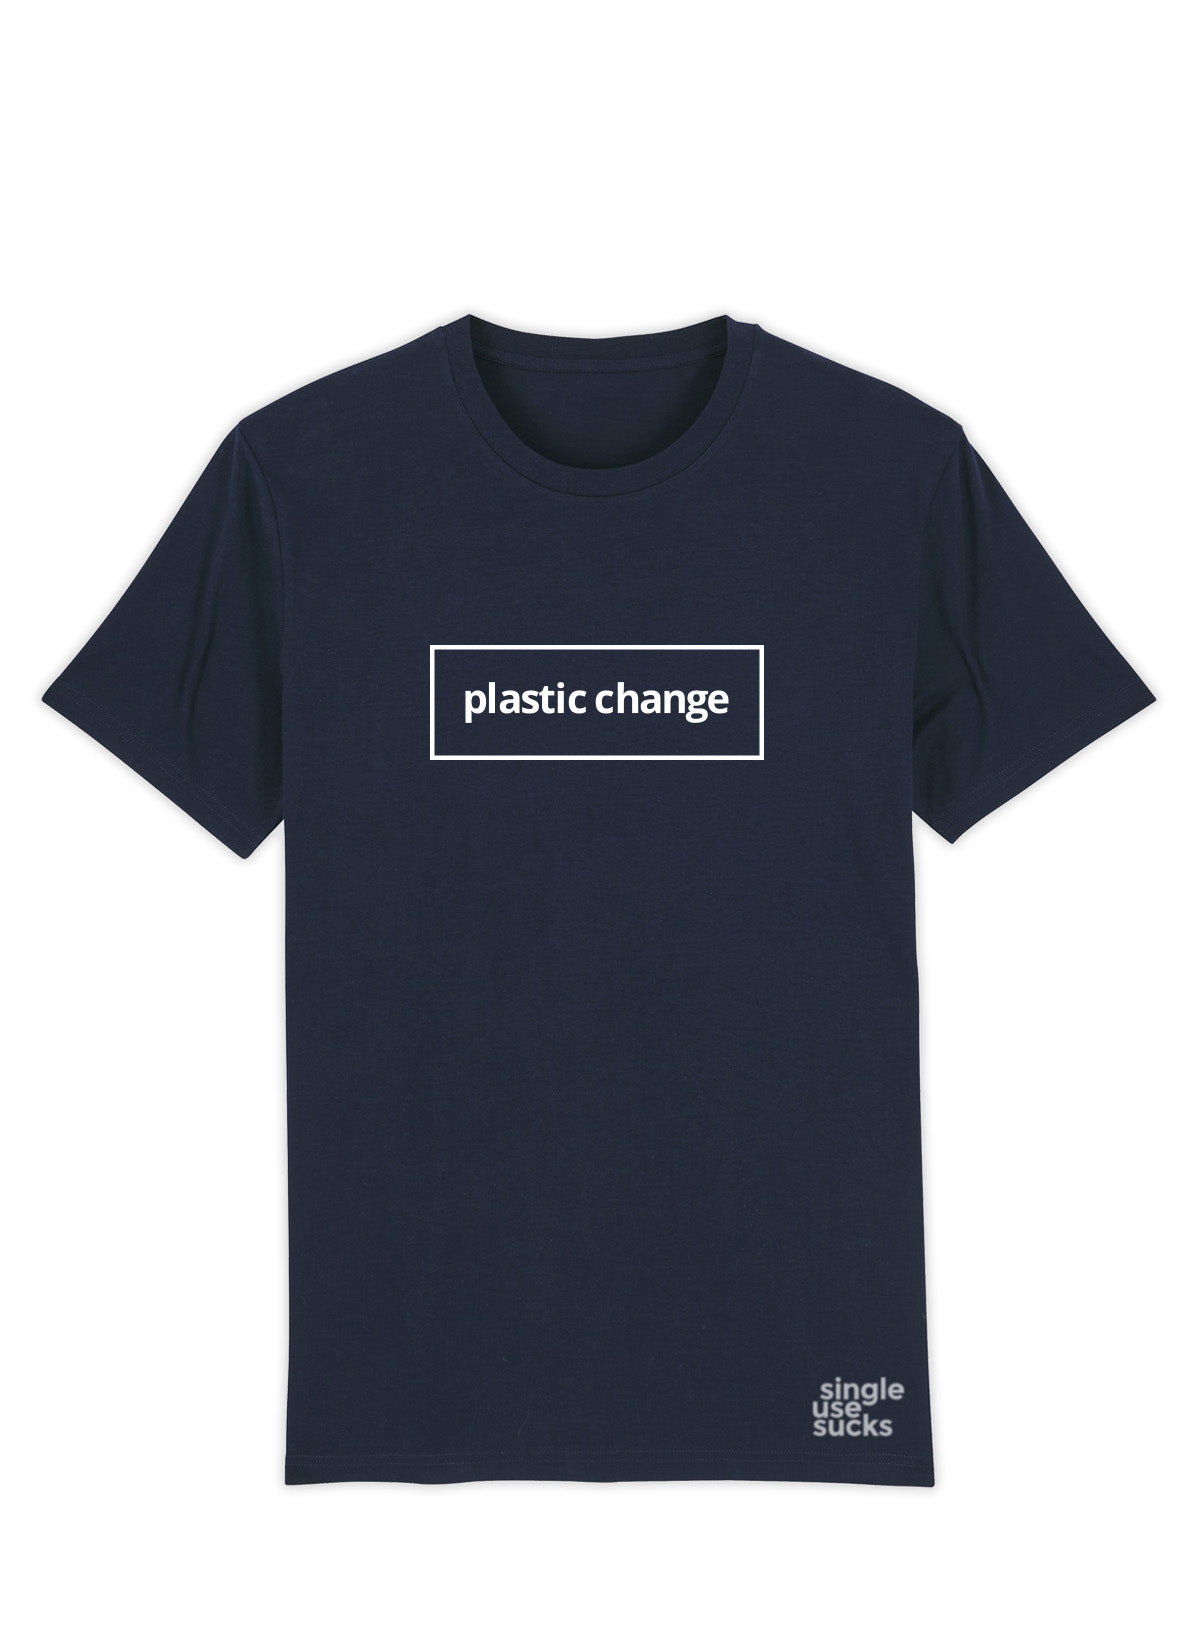 Tee "Plastic Change" - Men (Unisex) - Hjemhavn T-shirt 